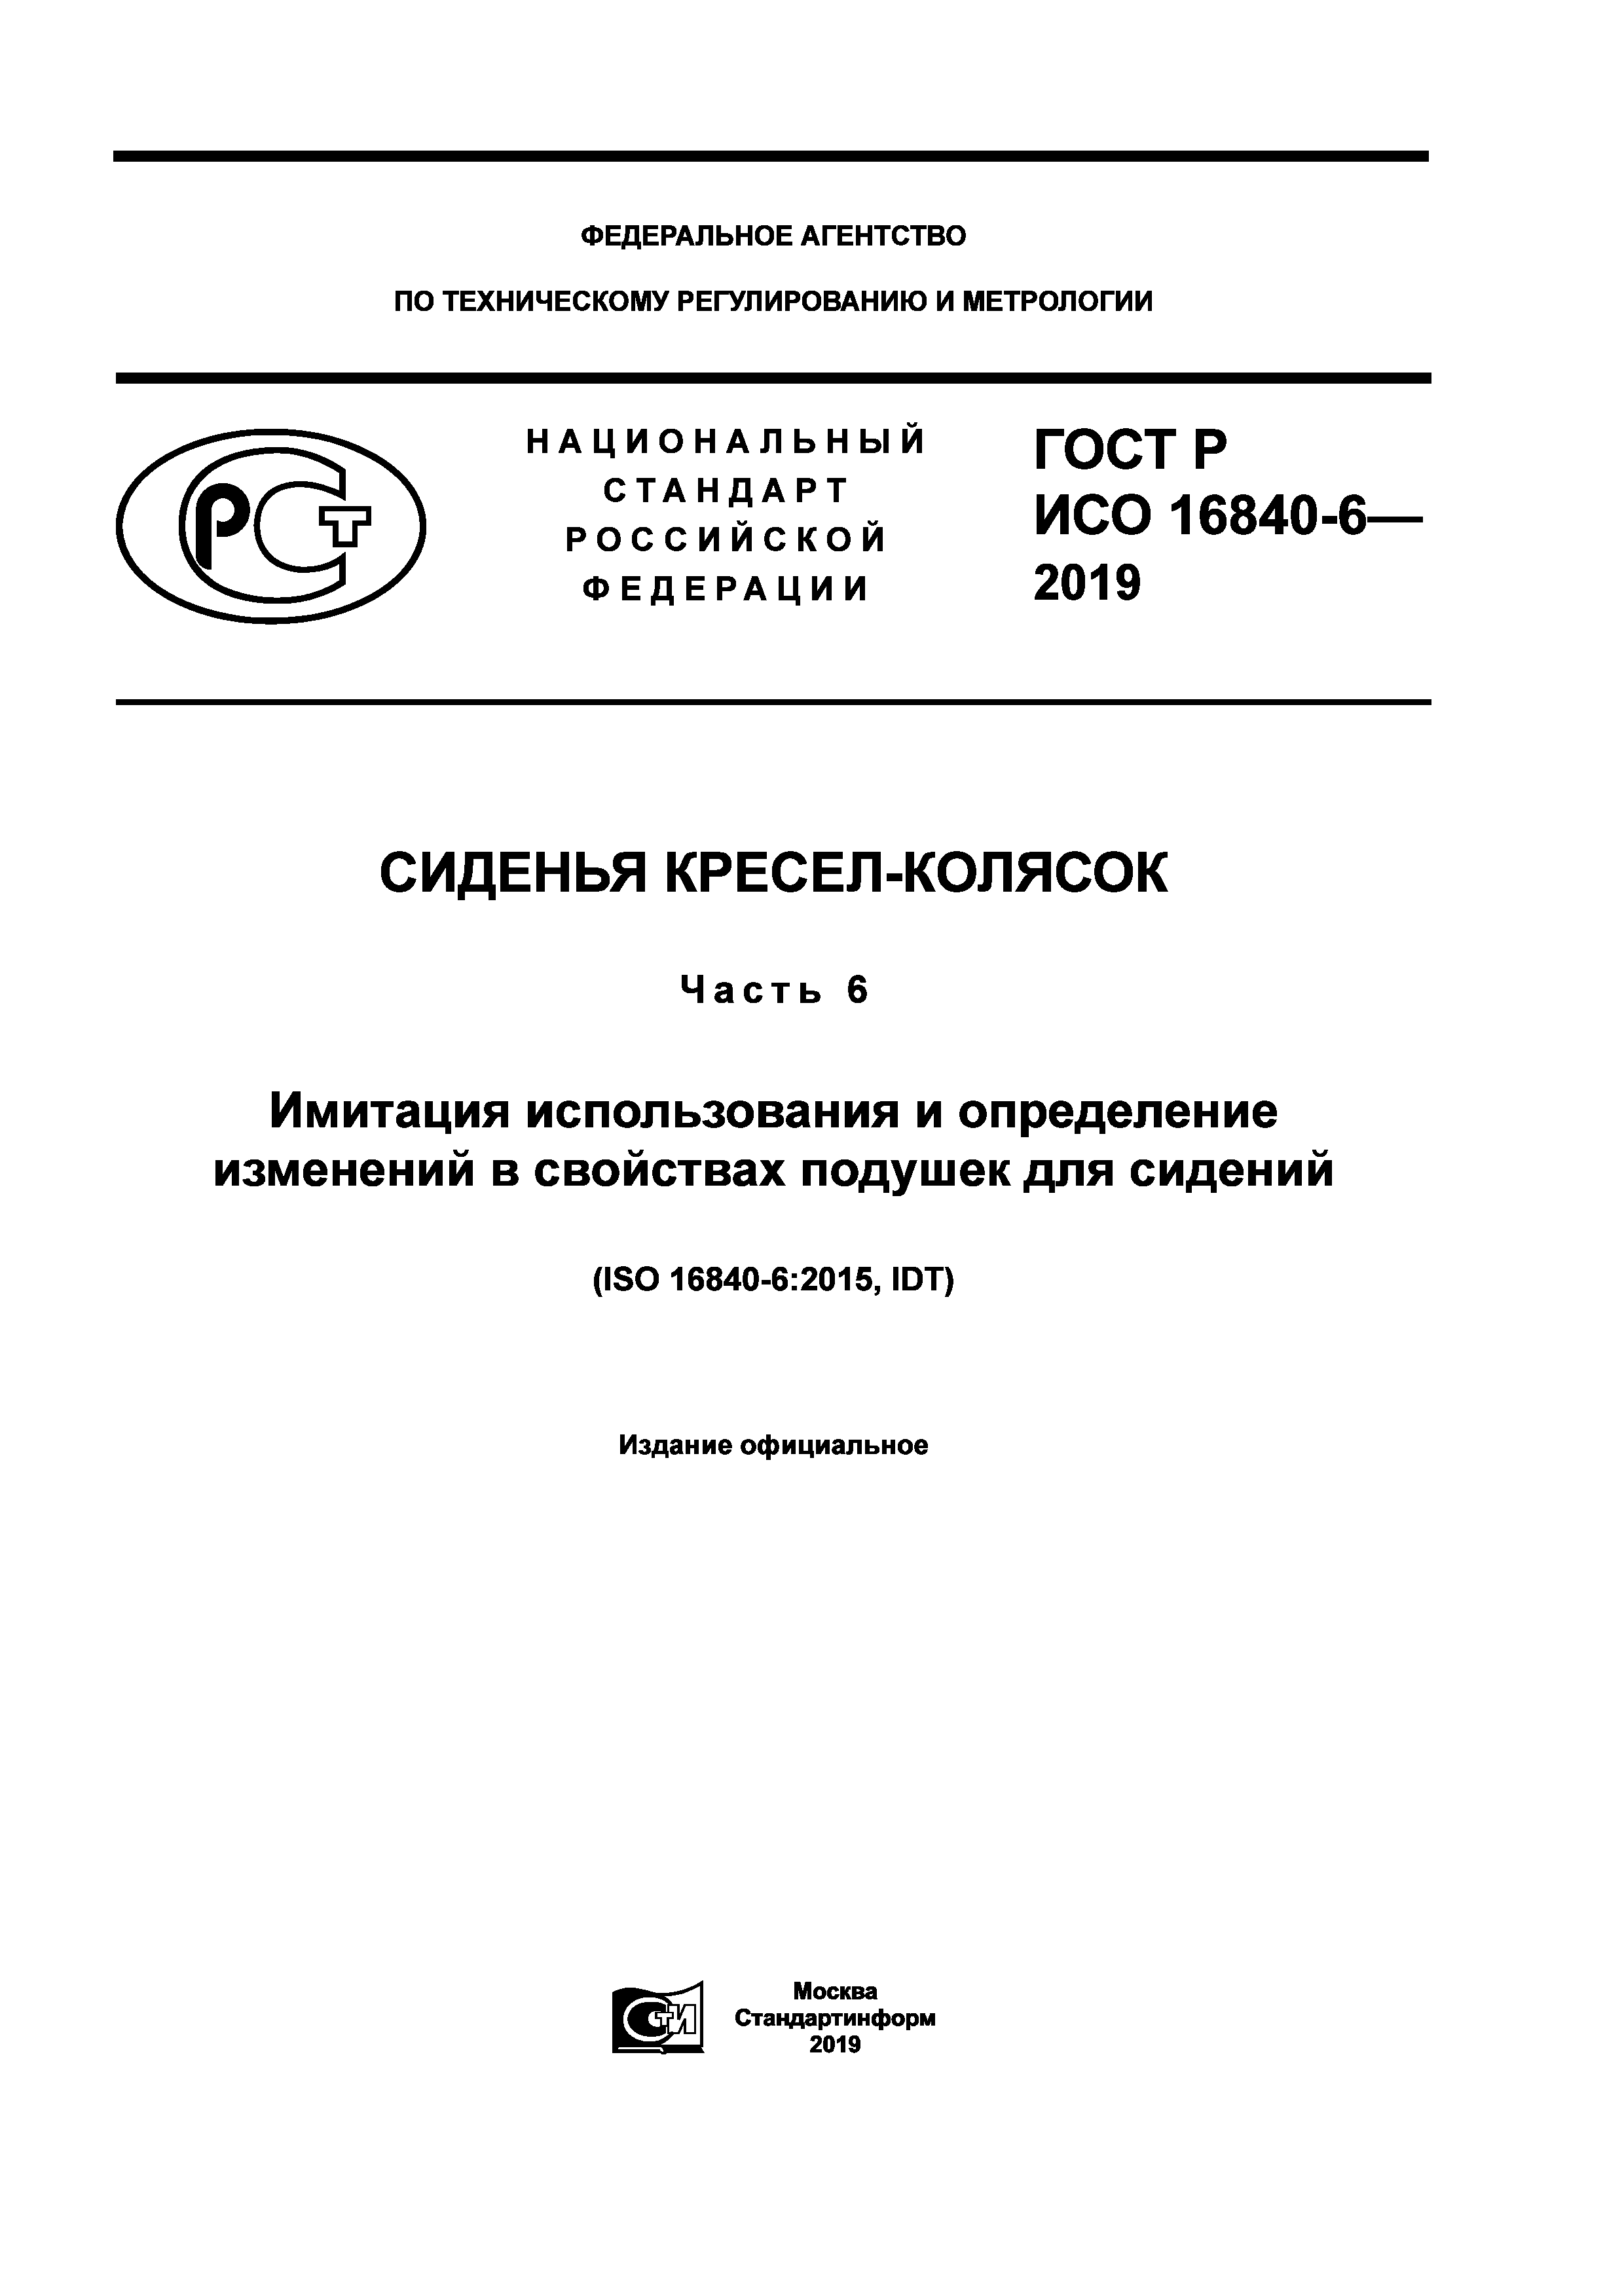 ГОСТ Р ИСО 16840-6-2019